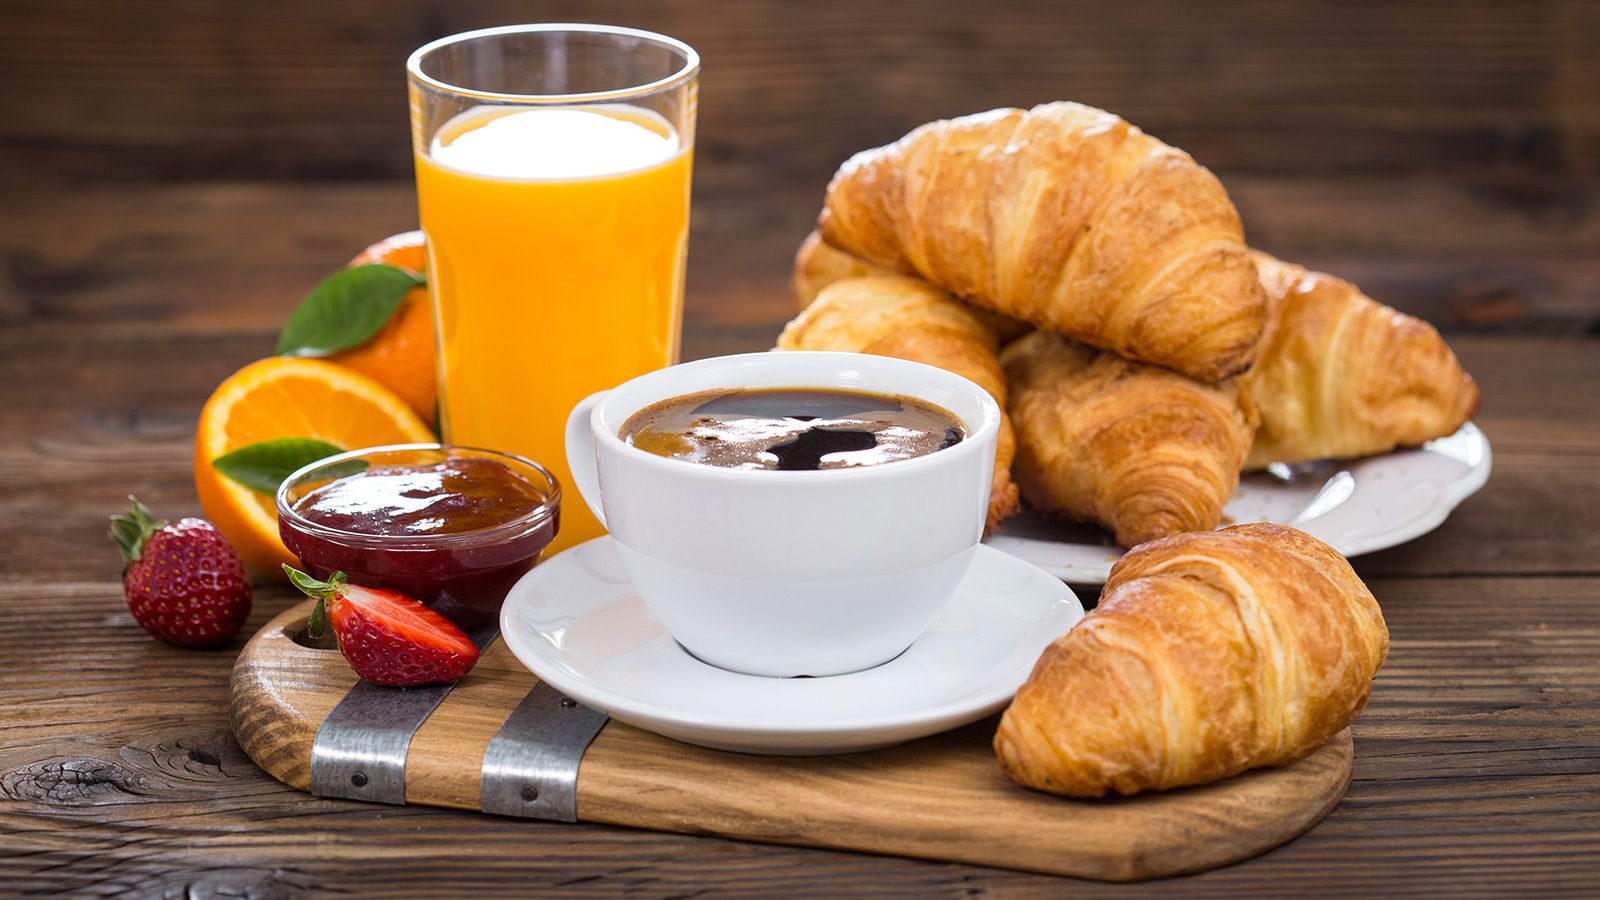 El desayuno: alimentos no aconsejables que creemos imprescindibles. En la imagen, un clásico desayuno con bollería, zumo de naranja, mermelada y mantequilla.